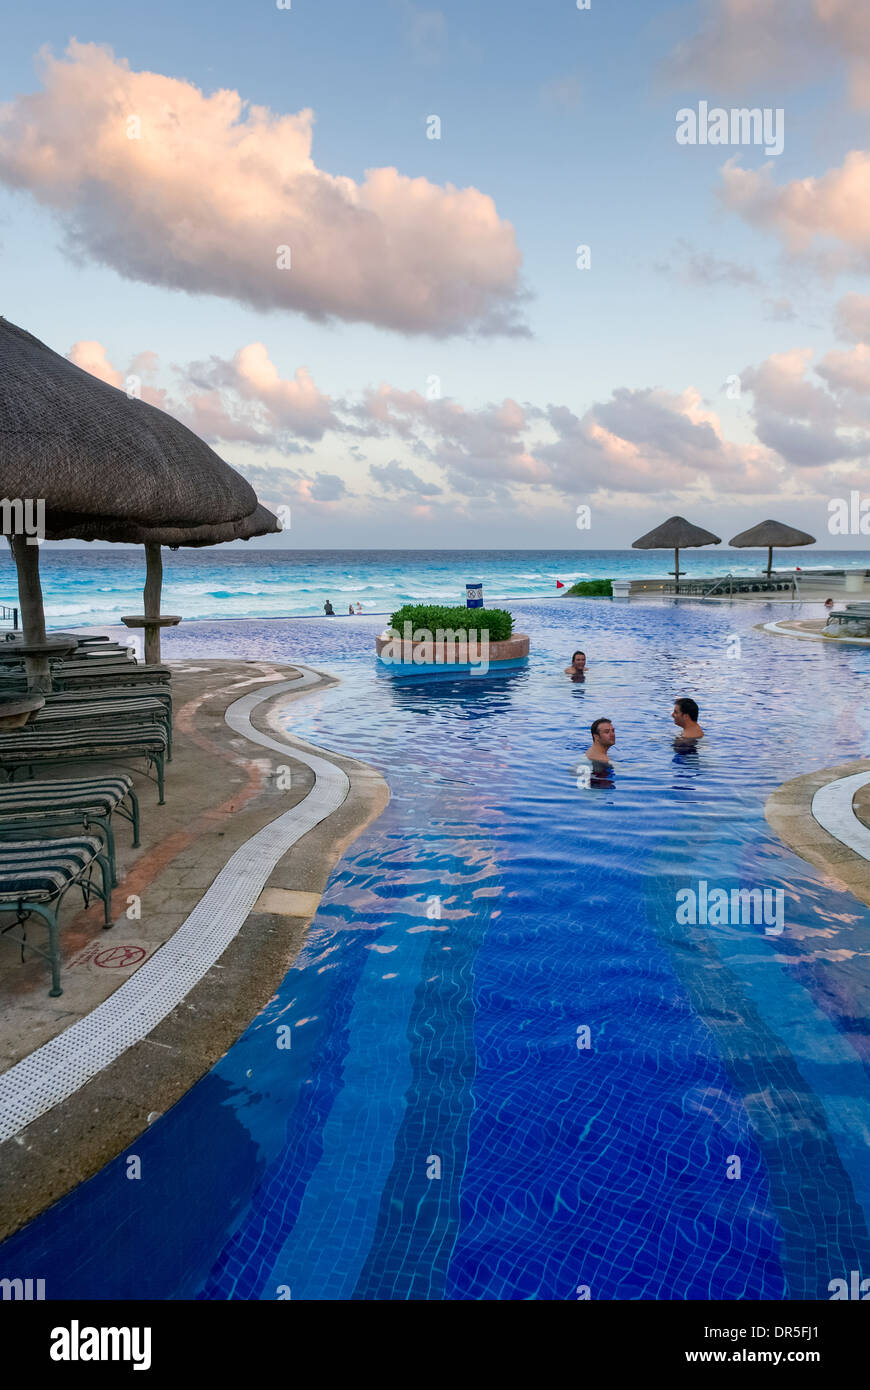 JW Marriott Hotel di Cancun Resort, Cancun, Messico Foto Stock